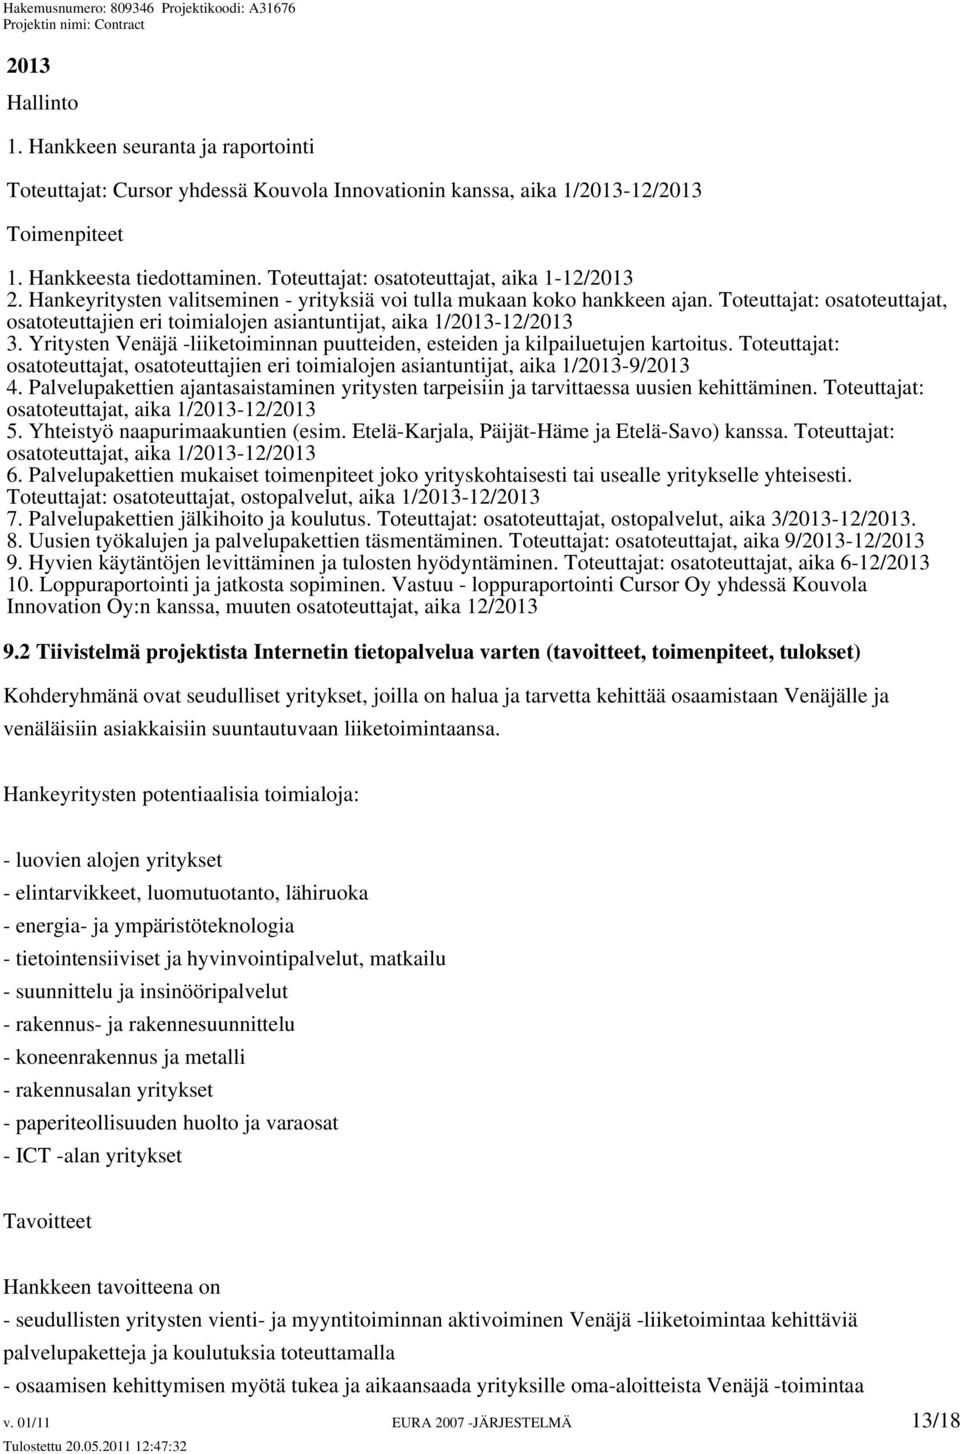 Toteuttajat: osatoteuttajat, osatoteuttajien eri toimialojen asiantuntijat, aika 1/2013-12/2013 3. Yritysten Venäjä -liiketoiminnan puutteiden, esteiden ja kilpailuetujen kartoitus.